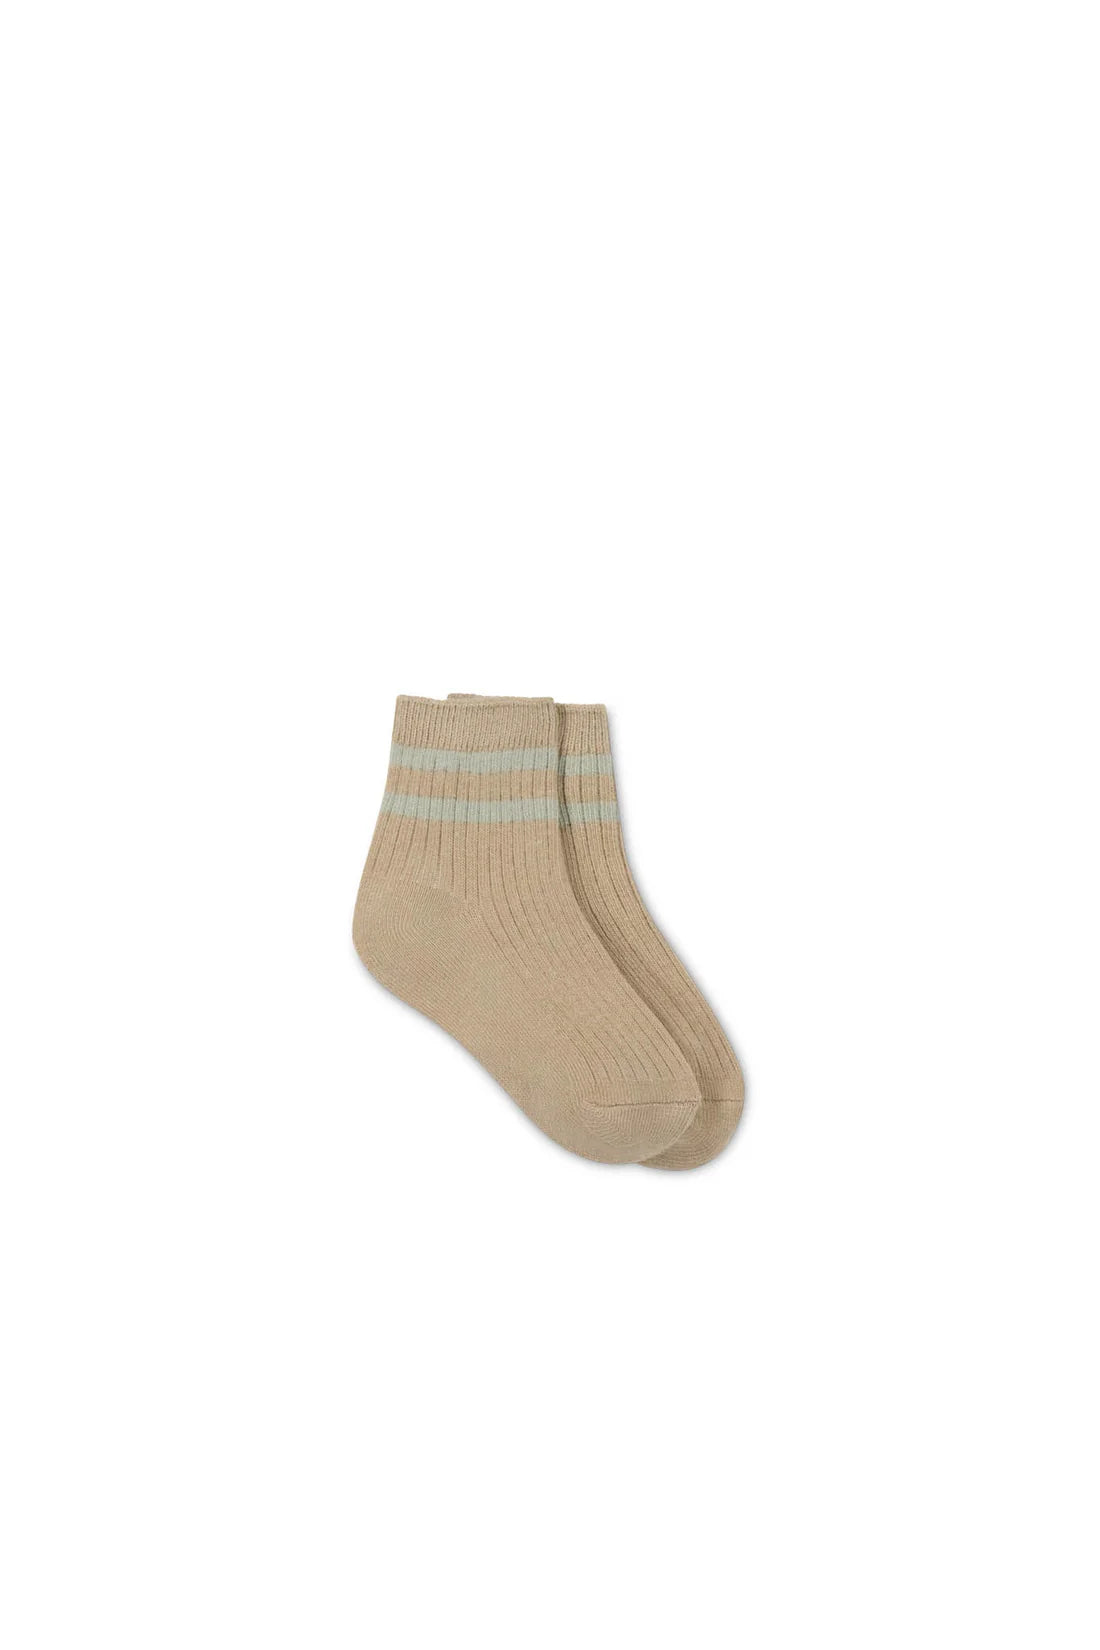 jamie kay brayden sock - bronzed